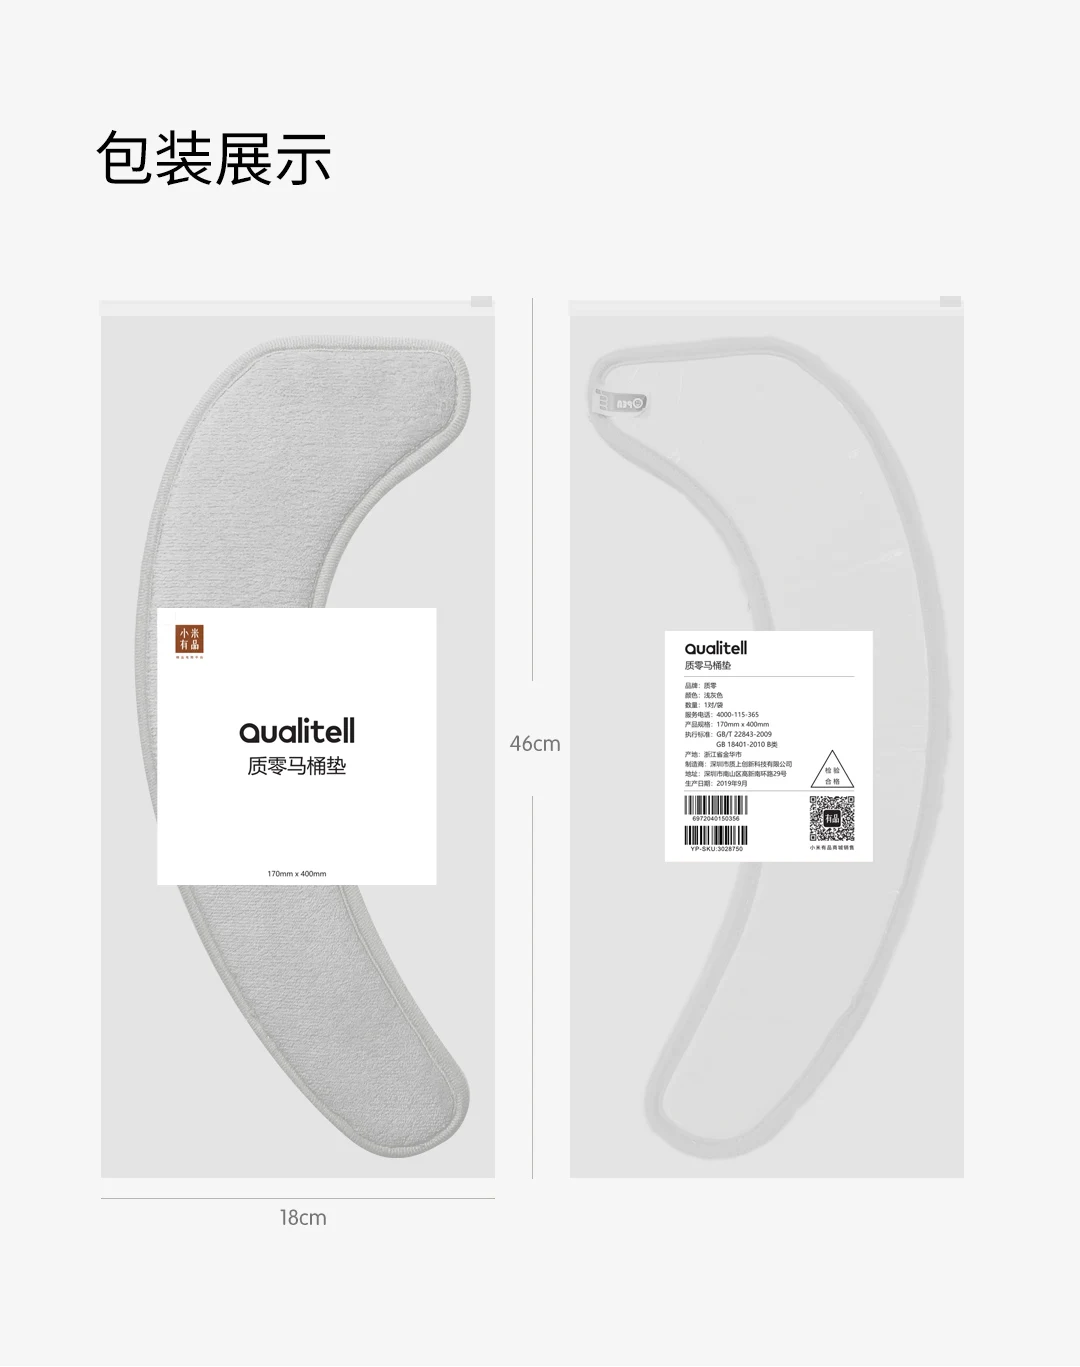 Xiaomi Mijia Youpin Zero светильник на сиденье для унитаза серый 1 пара/сумка выбранная фланель без следов адсорбции легко снимать и мыть - Цвет: Серый